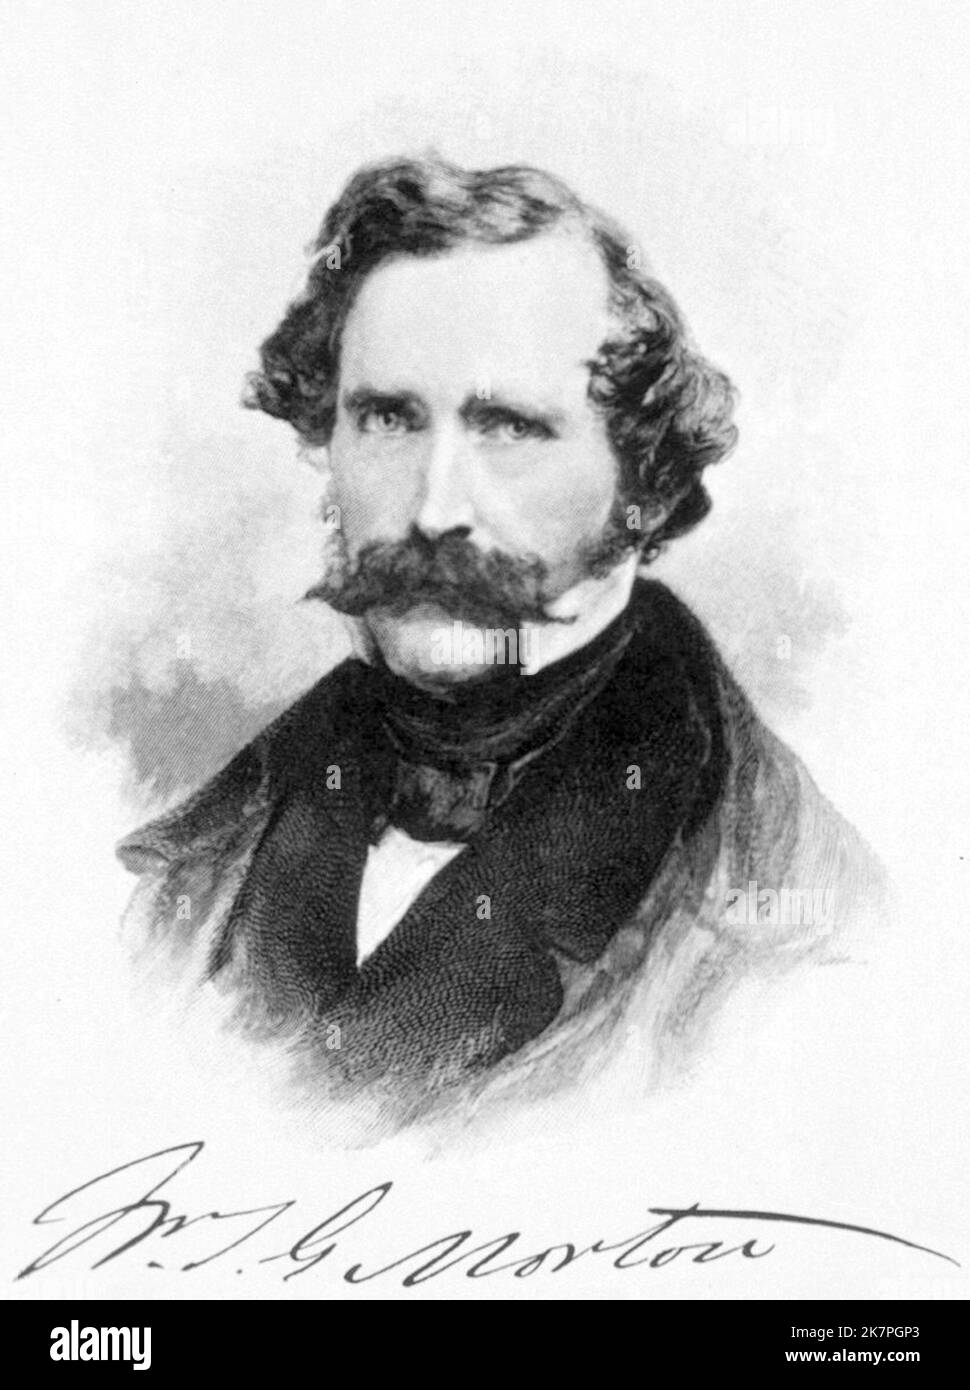 William Morton, William Thomas Green Morton (1819 – 1868) dentista e medico americano che per la prima volta ha dimostrato pubblicamente l'uso di etere inalato come anestetico chirurgico nel 1846. Foto Stock